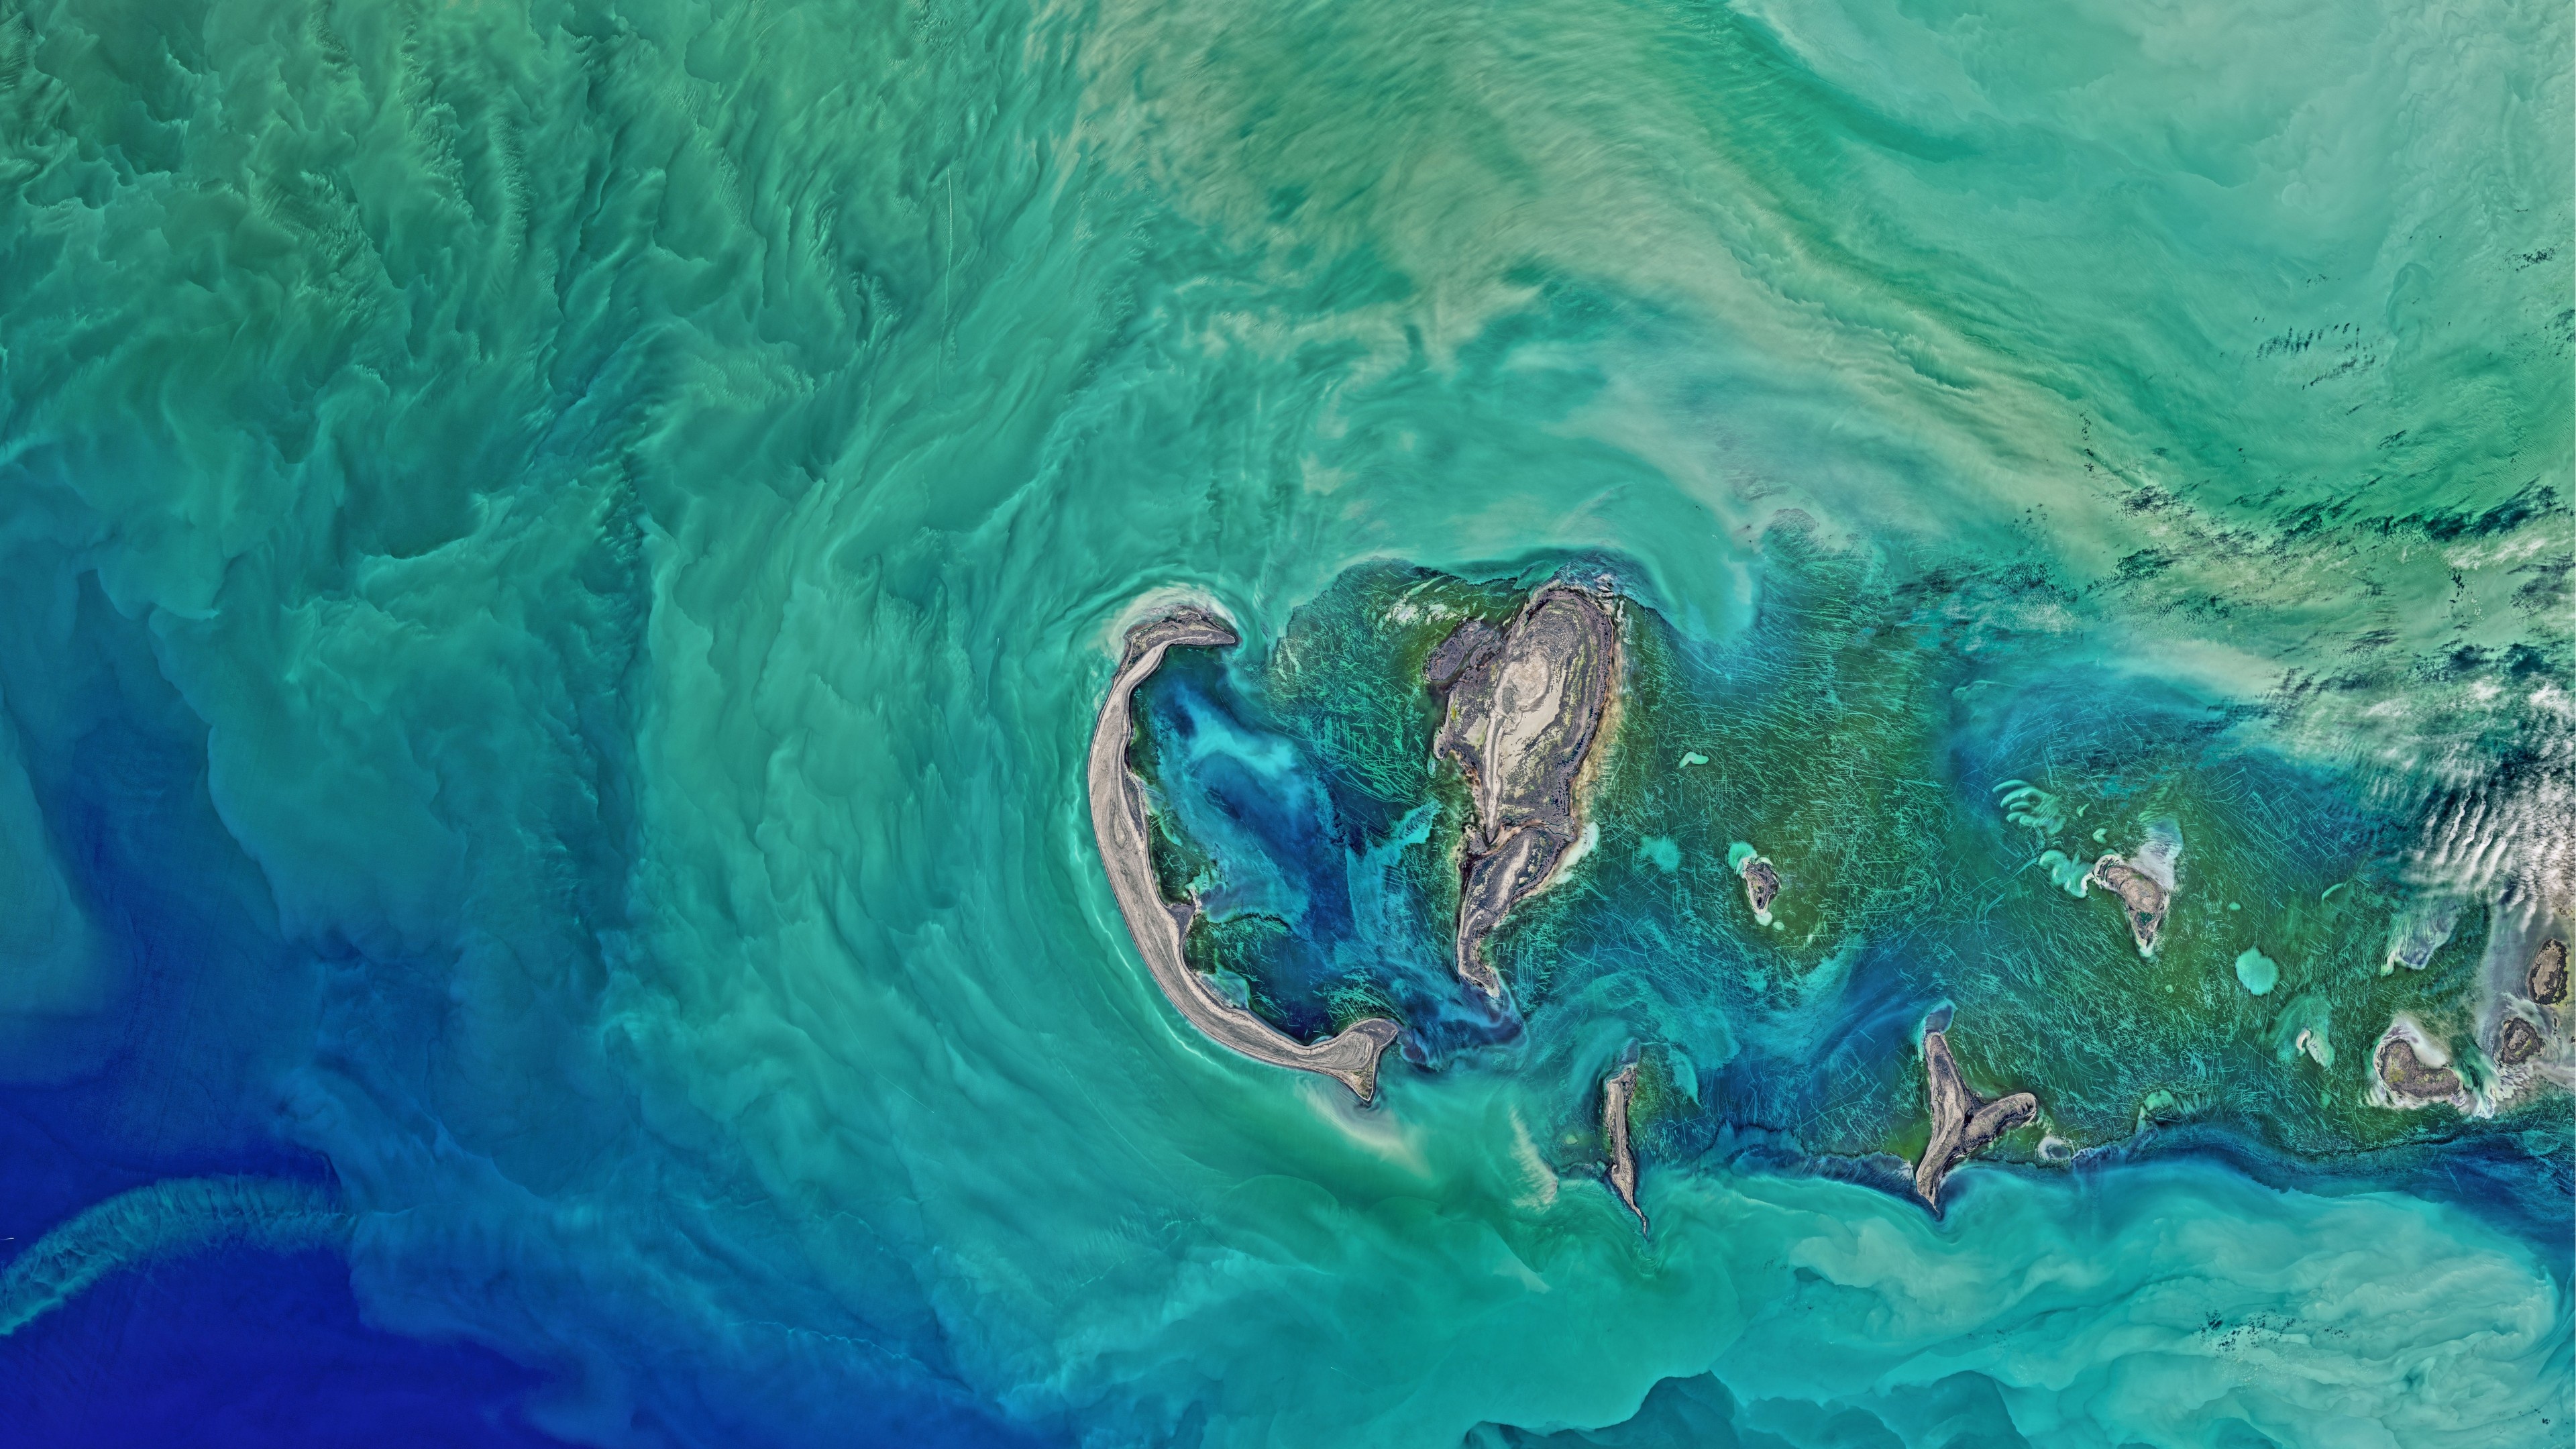 Caspian Sea, North region, NASA wallpaper, 4K, 3840x2160 4K Desktop